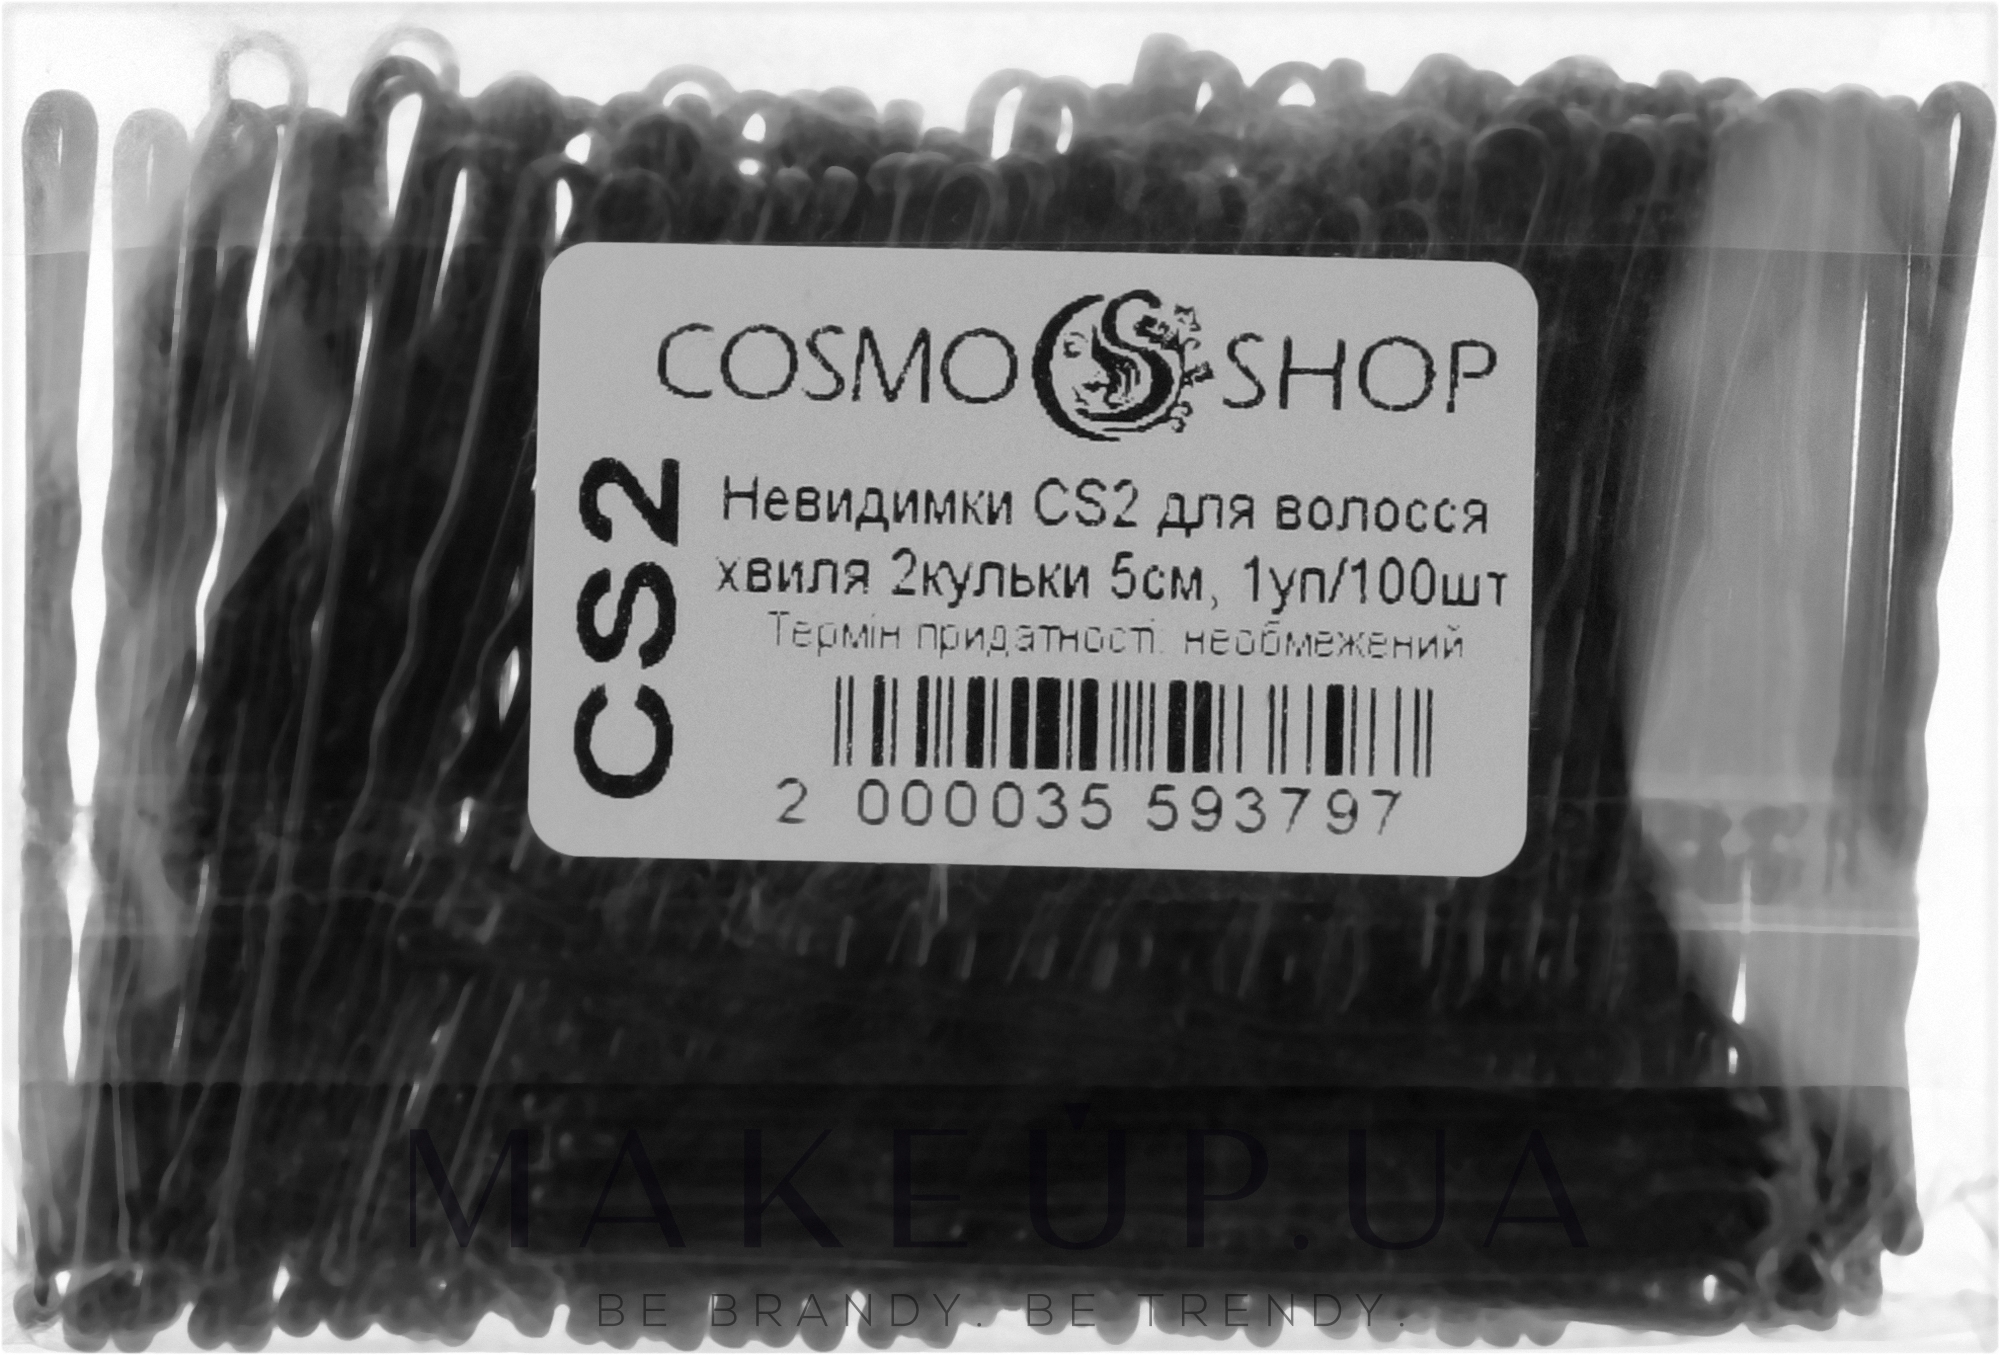 Невидимки для волосся, CS2, 5 см, чорні - Cosmo Shop — фото 100шт